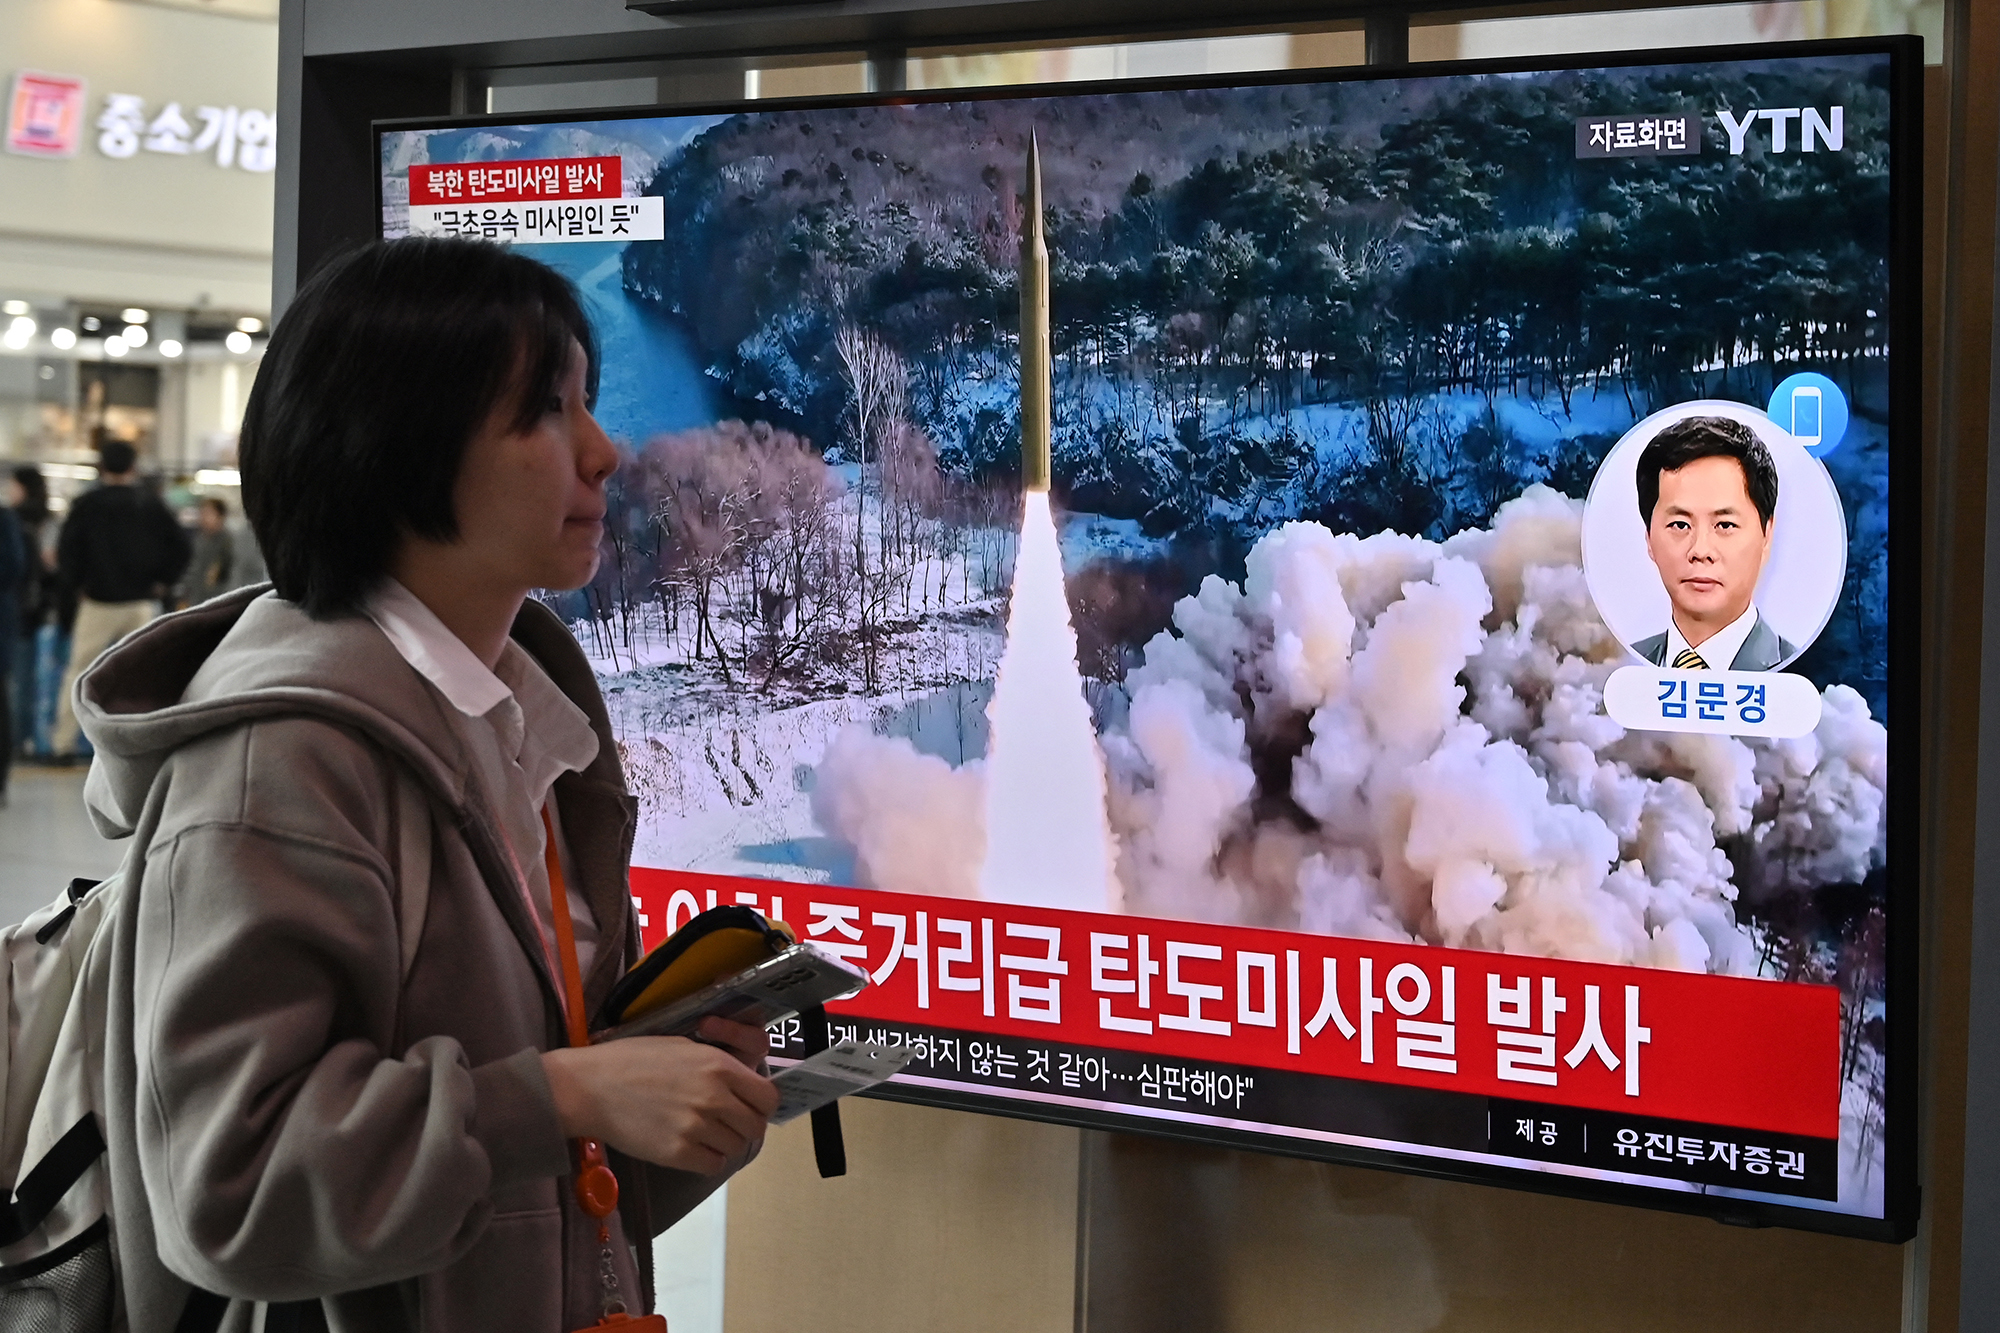 Bilder im südkoreanischen Fernsehen zeigen den erneuten Raketentest Nordkoreas